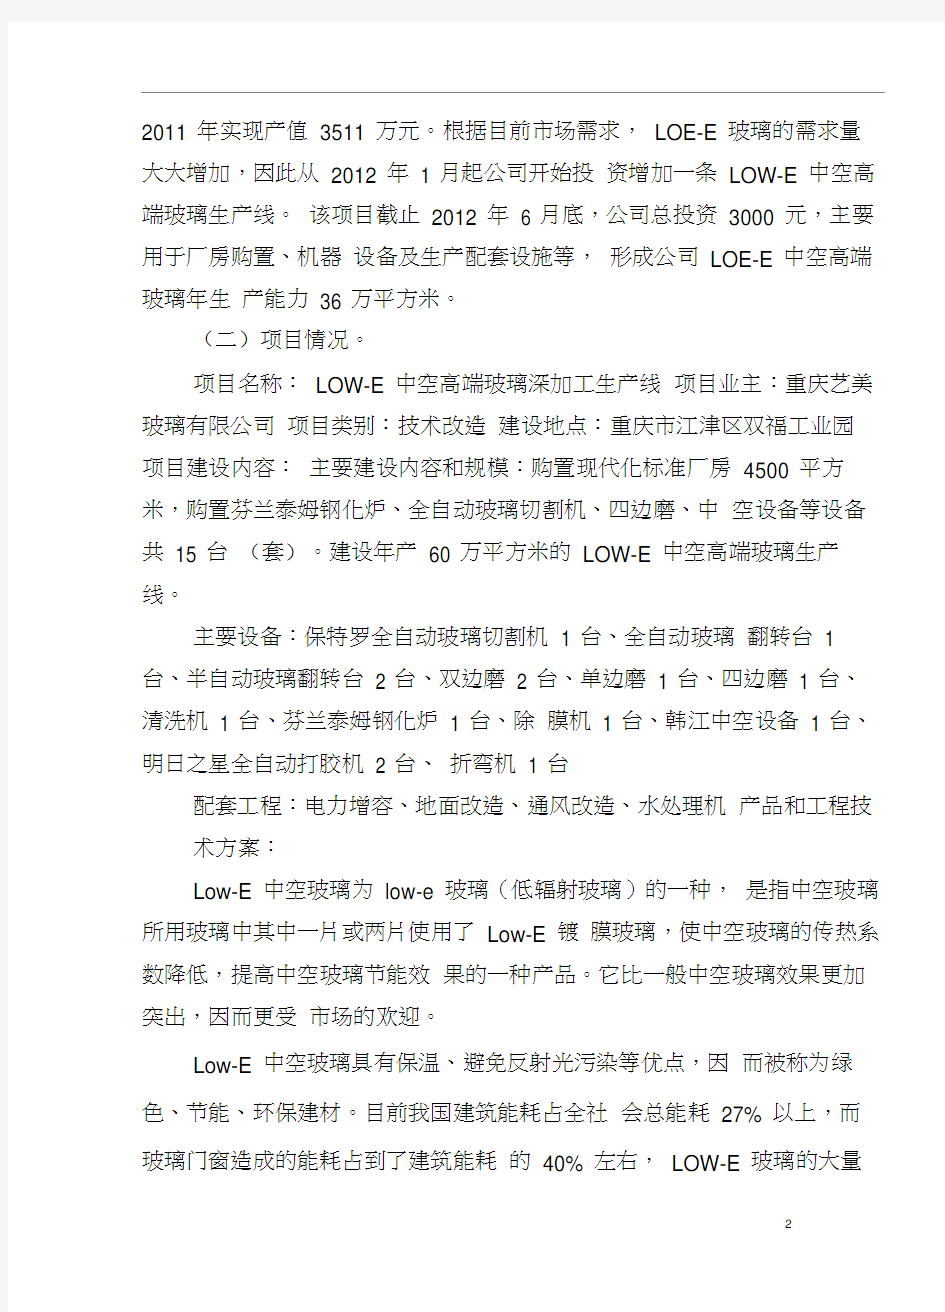 重庆艺美玻璃有限公司“LOW-E中空高端玻璃深加工生产线项目”可行性